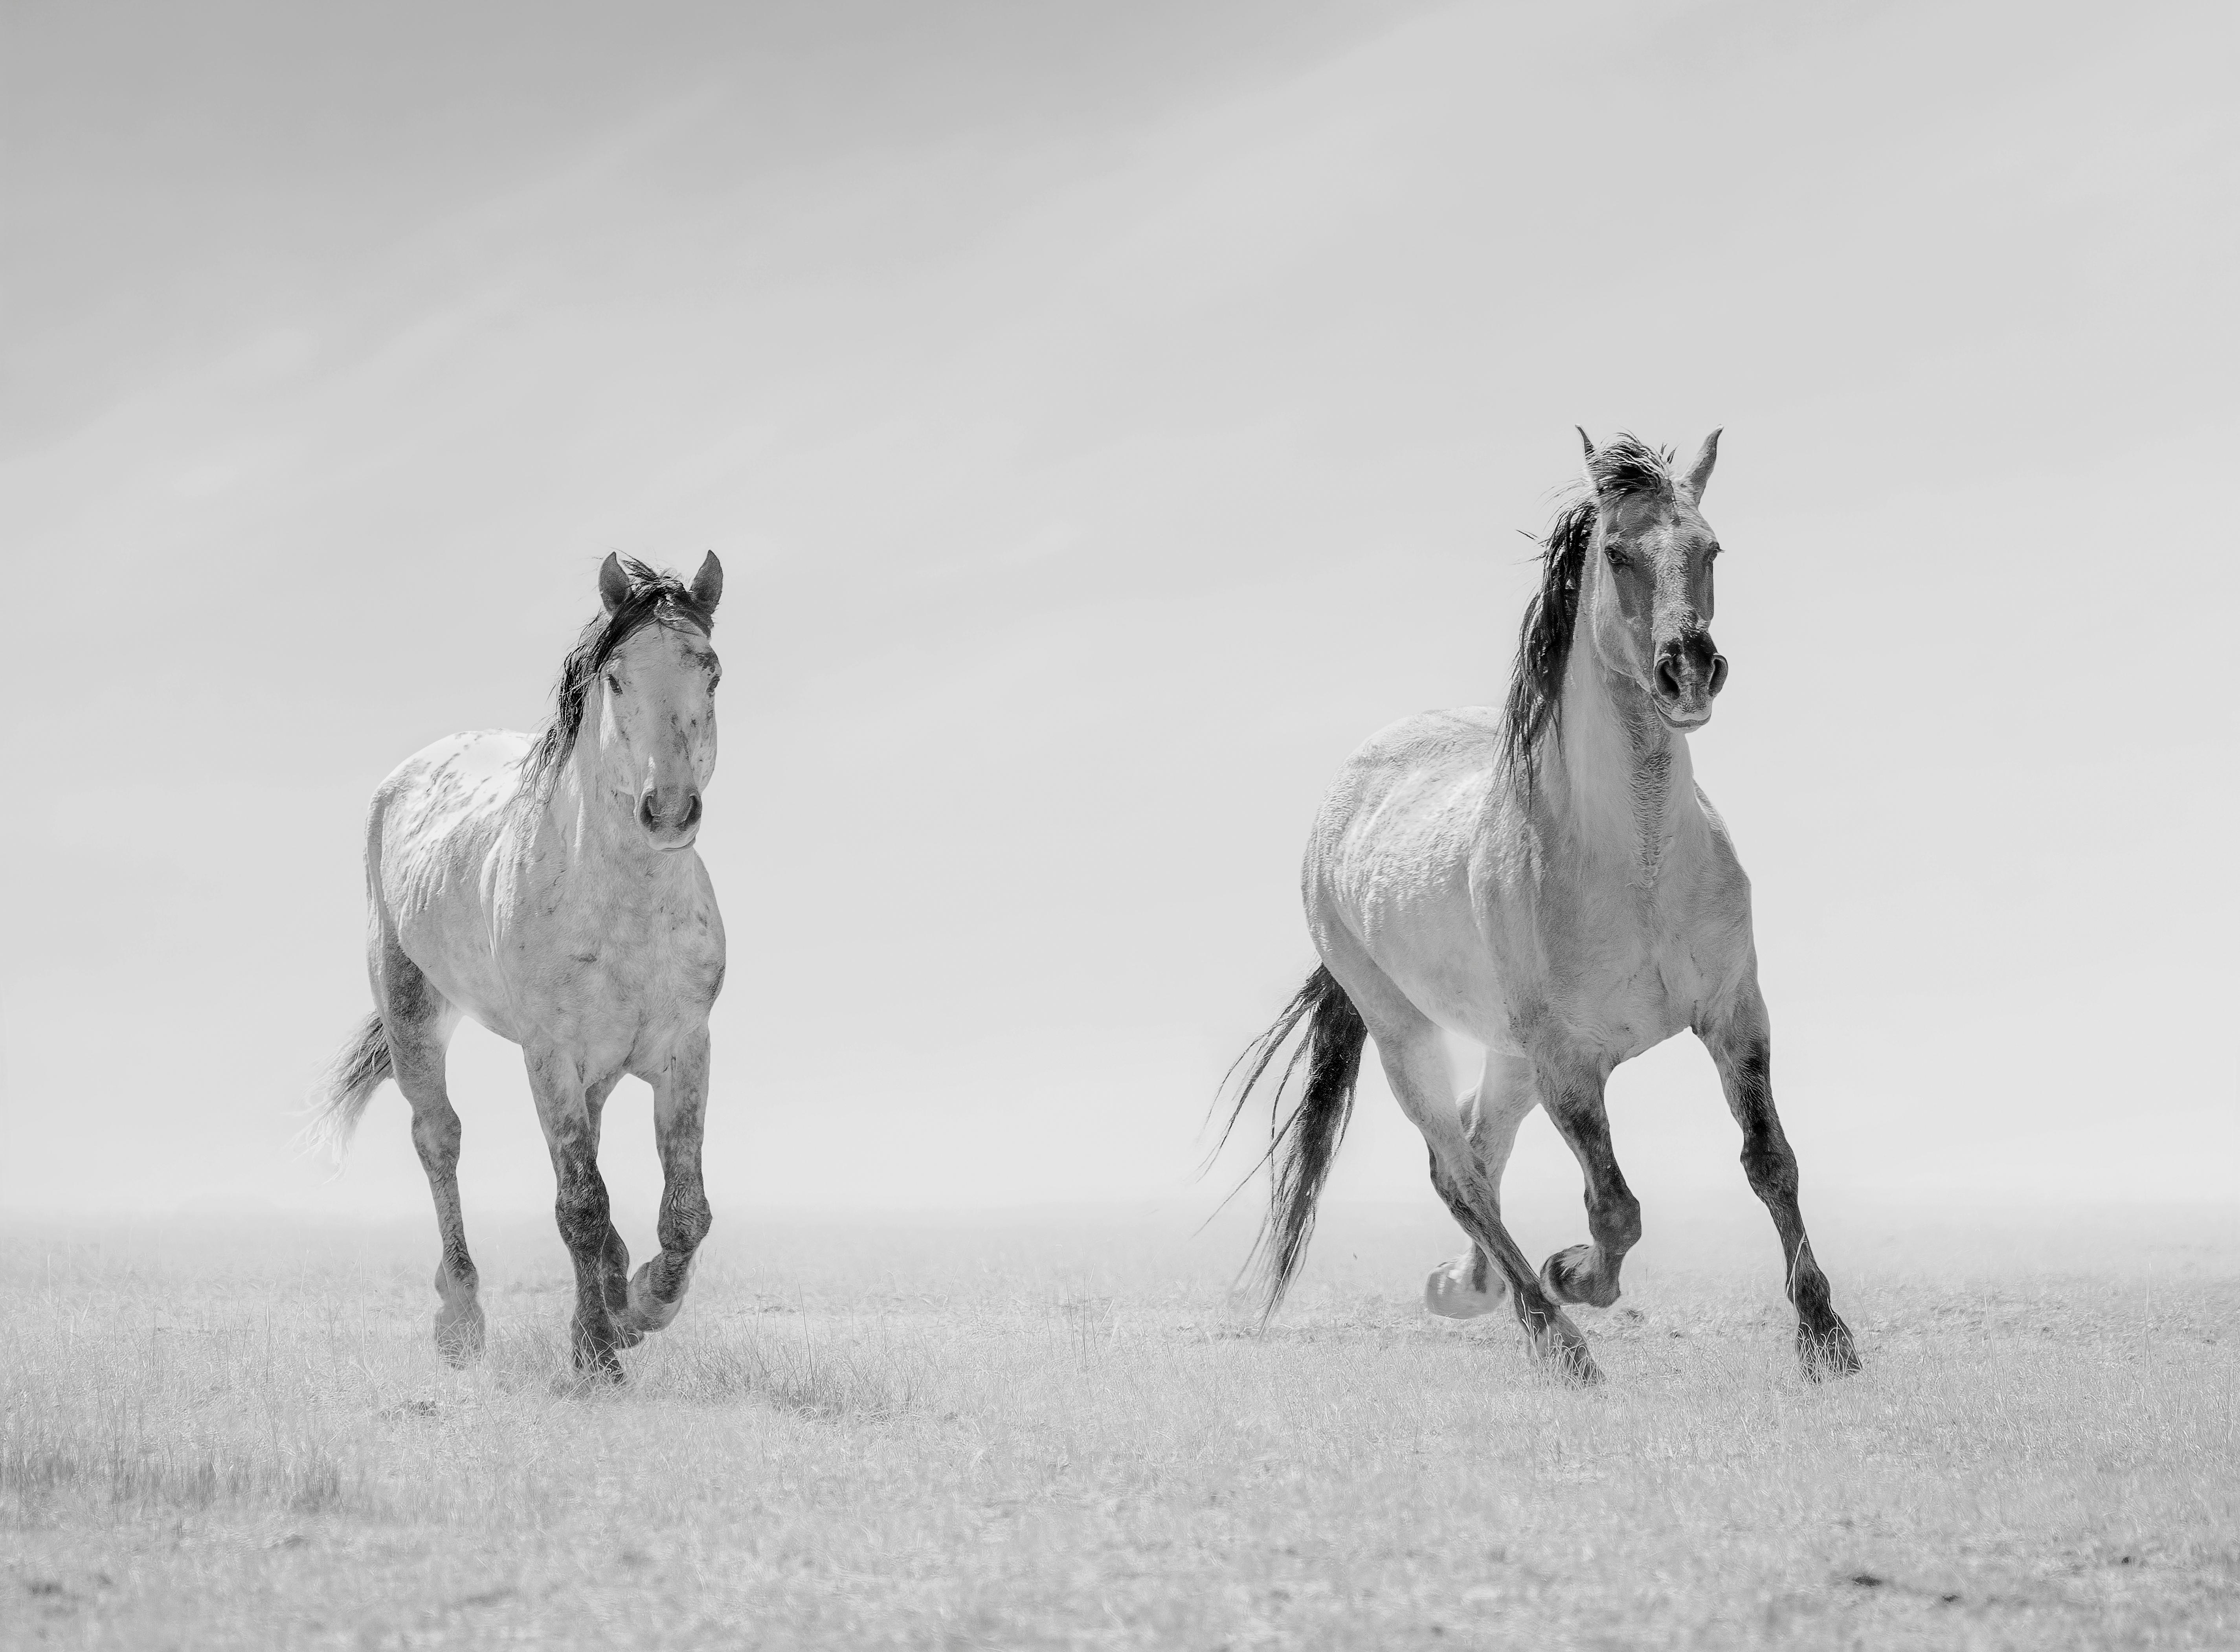 Animal Print Shane Russeck - "Héros de l'Ouest " 36x48 - Photographie en noir et blanc, chevaux sauvages, mustangs